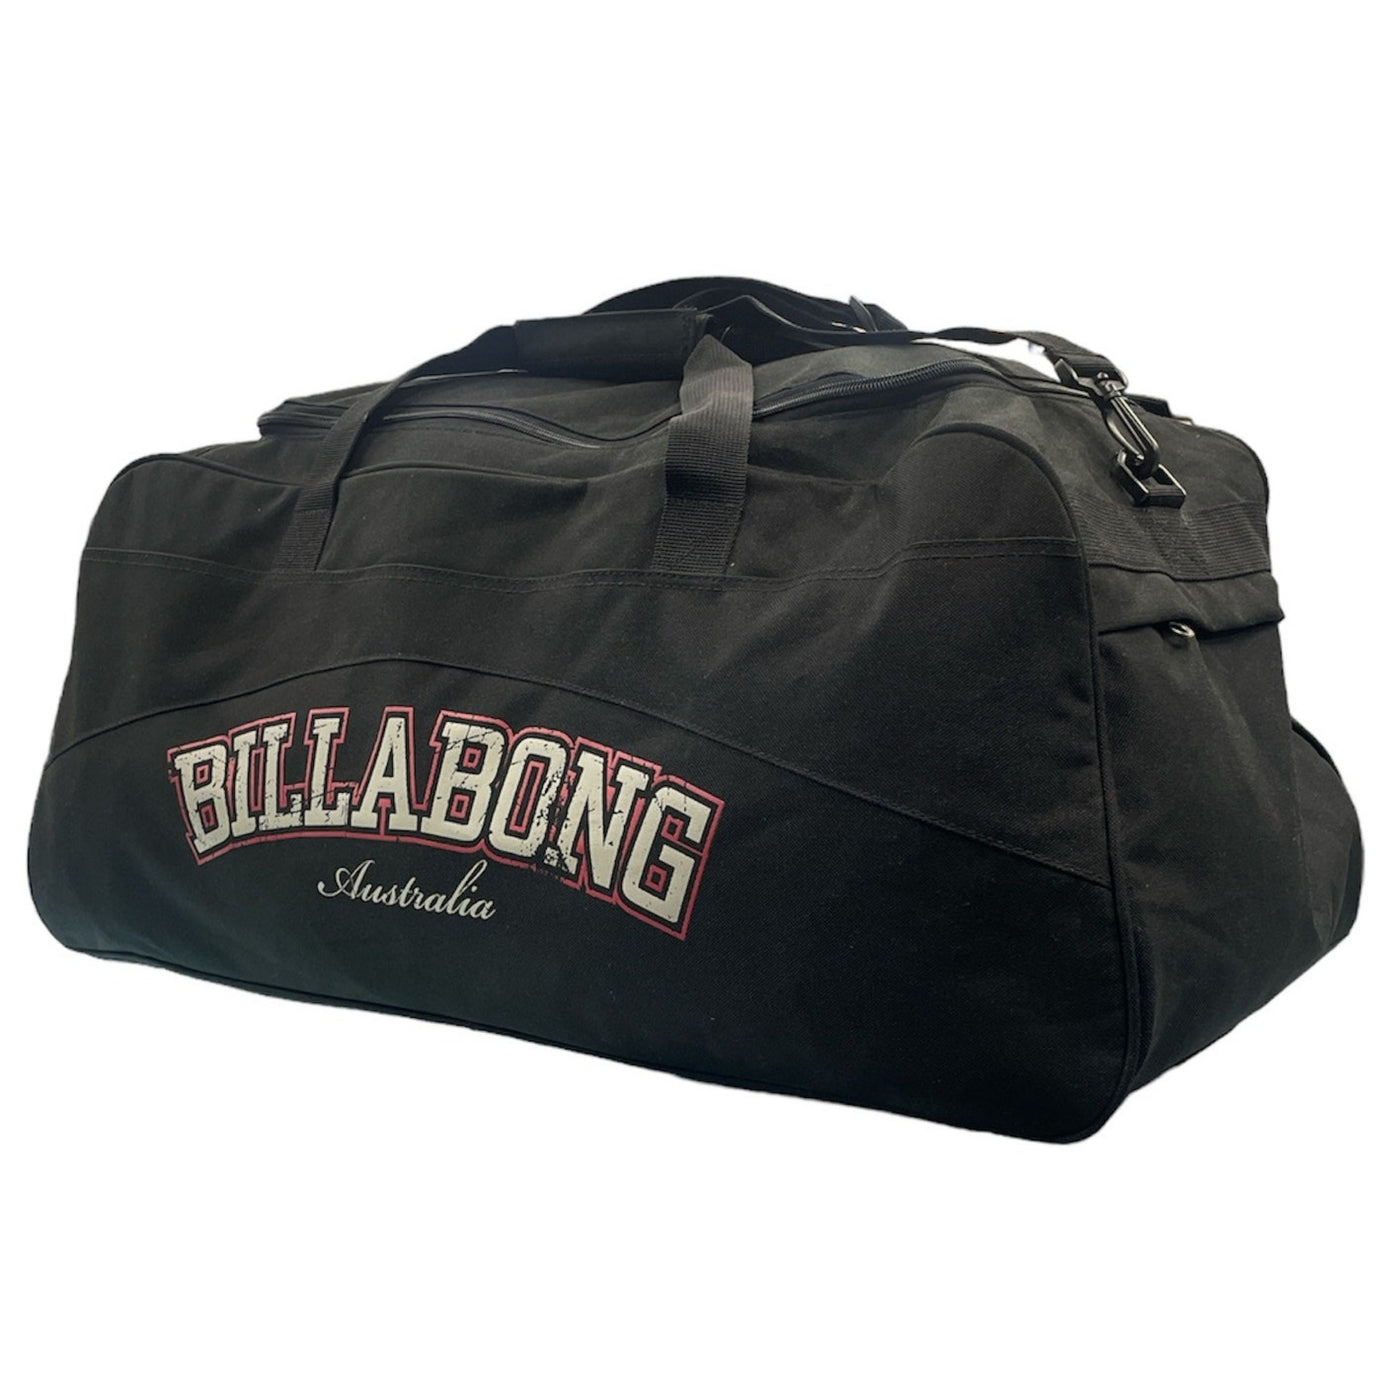 Billabong Basement Traveller Bag